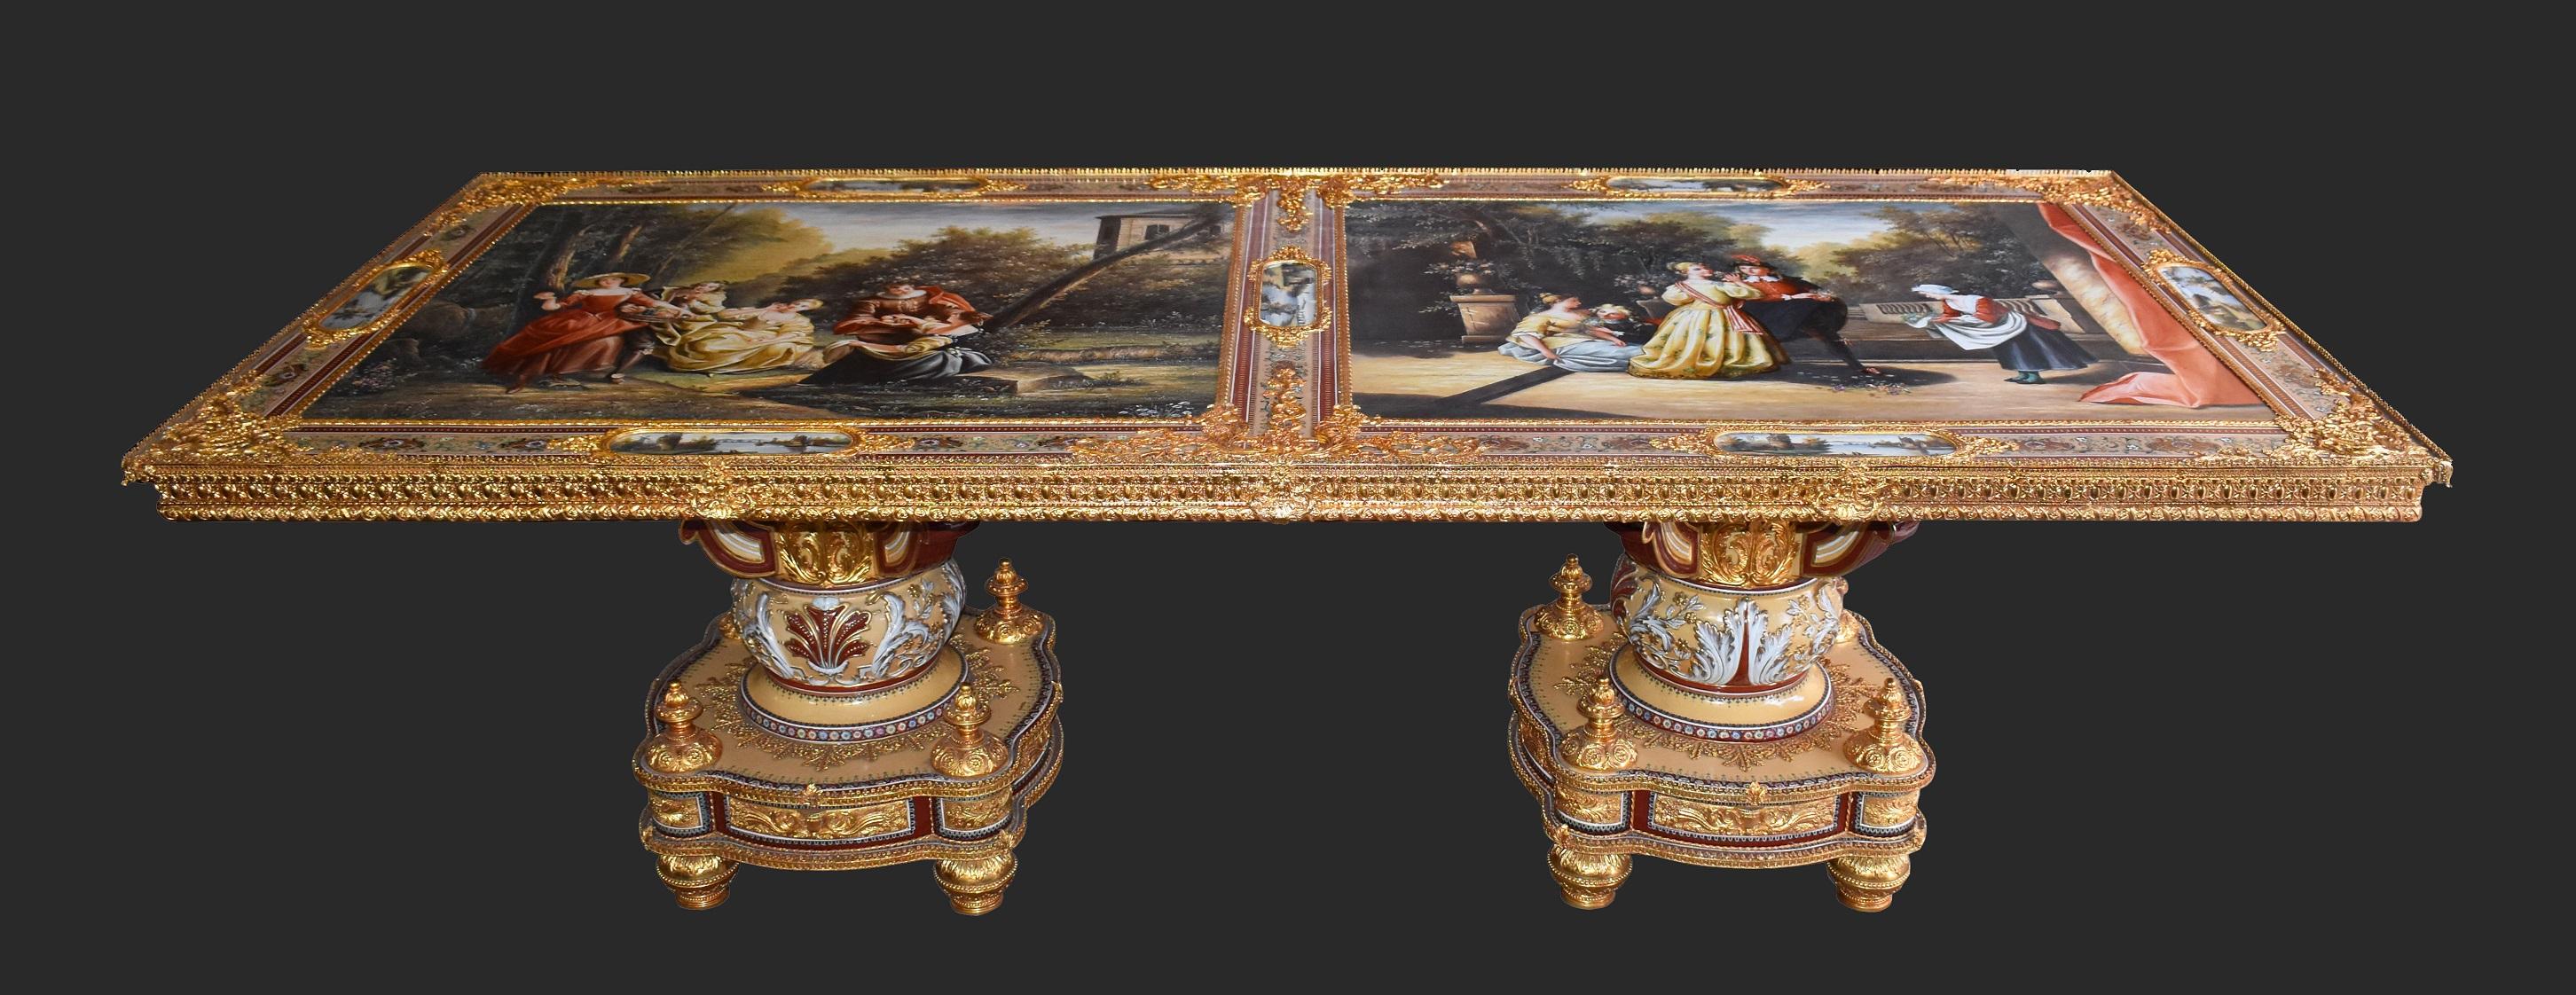 Nous proposons à la vente une belle et rare table en porcelaine peinte à la main du 20e siècle, probablement d'origine italienne, fabriquée sur mesure pour un membre de l'aristocratie du début du 20e siècle. Le dessus de la table comporte deux